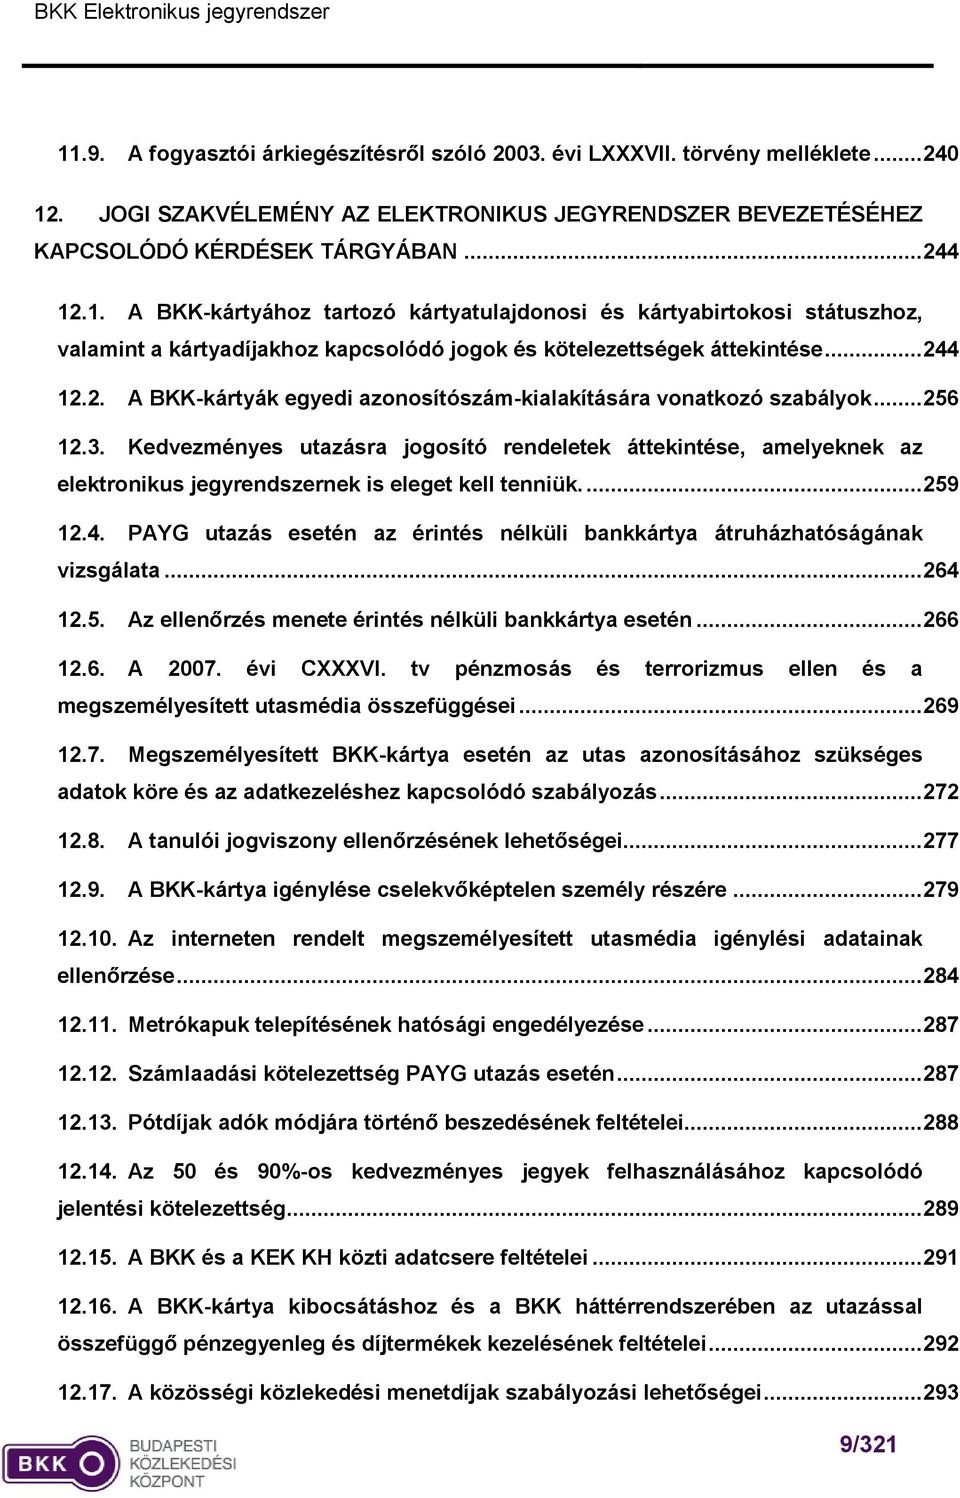 BKK Elektronikus jegyrendszer Megvalósíthatósági vizsgálat - PDF Free  Download